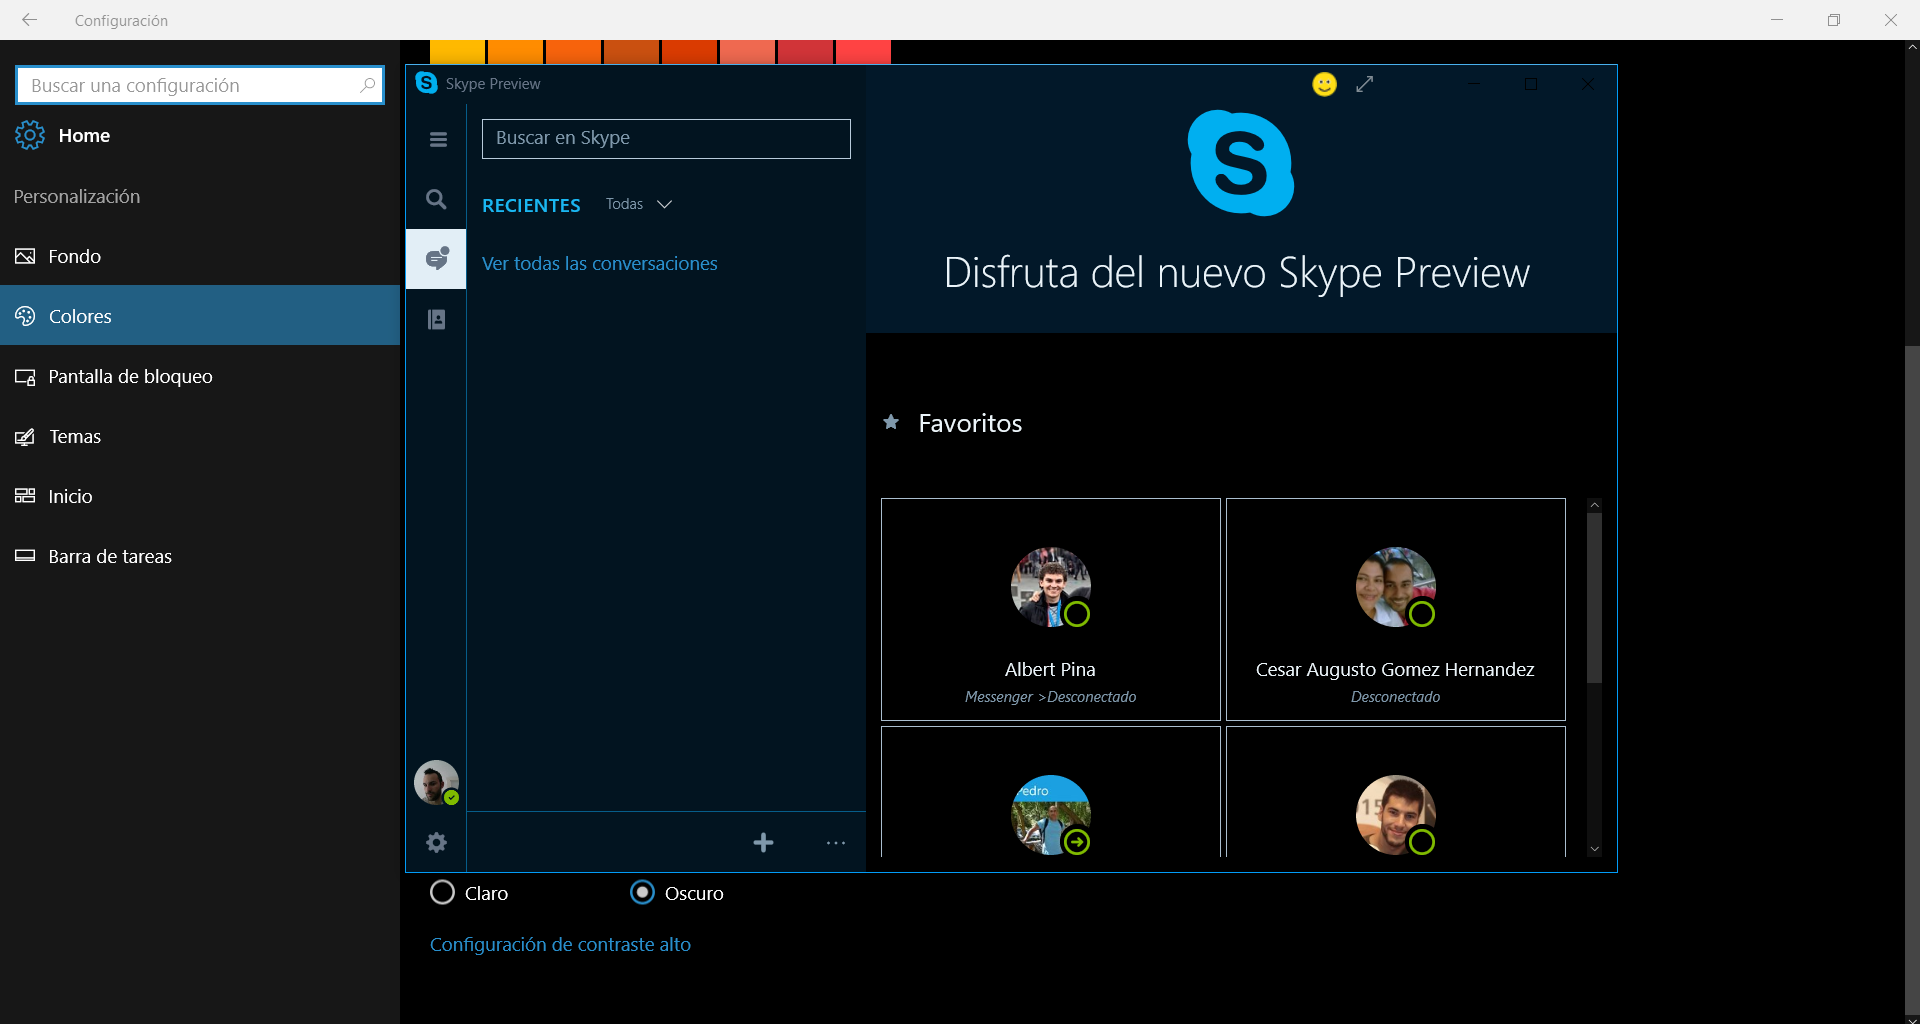 Skype preview para Windows 10 se actualiza solucionando errores